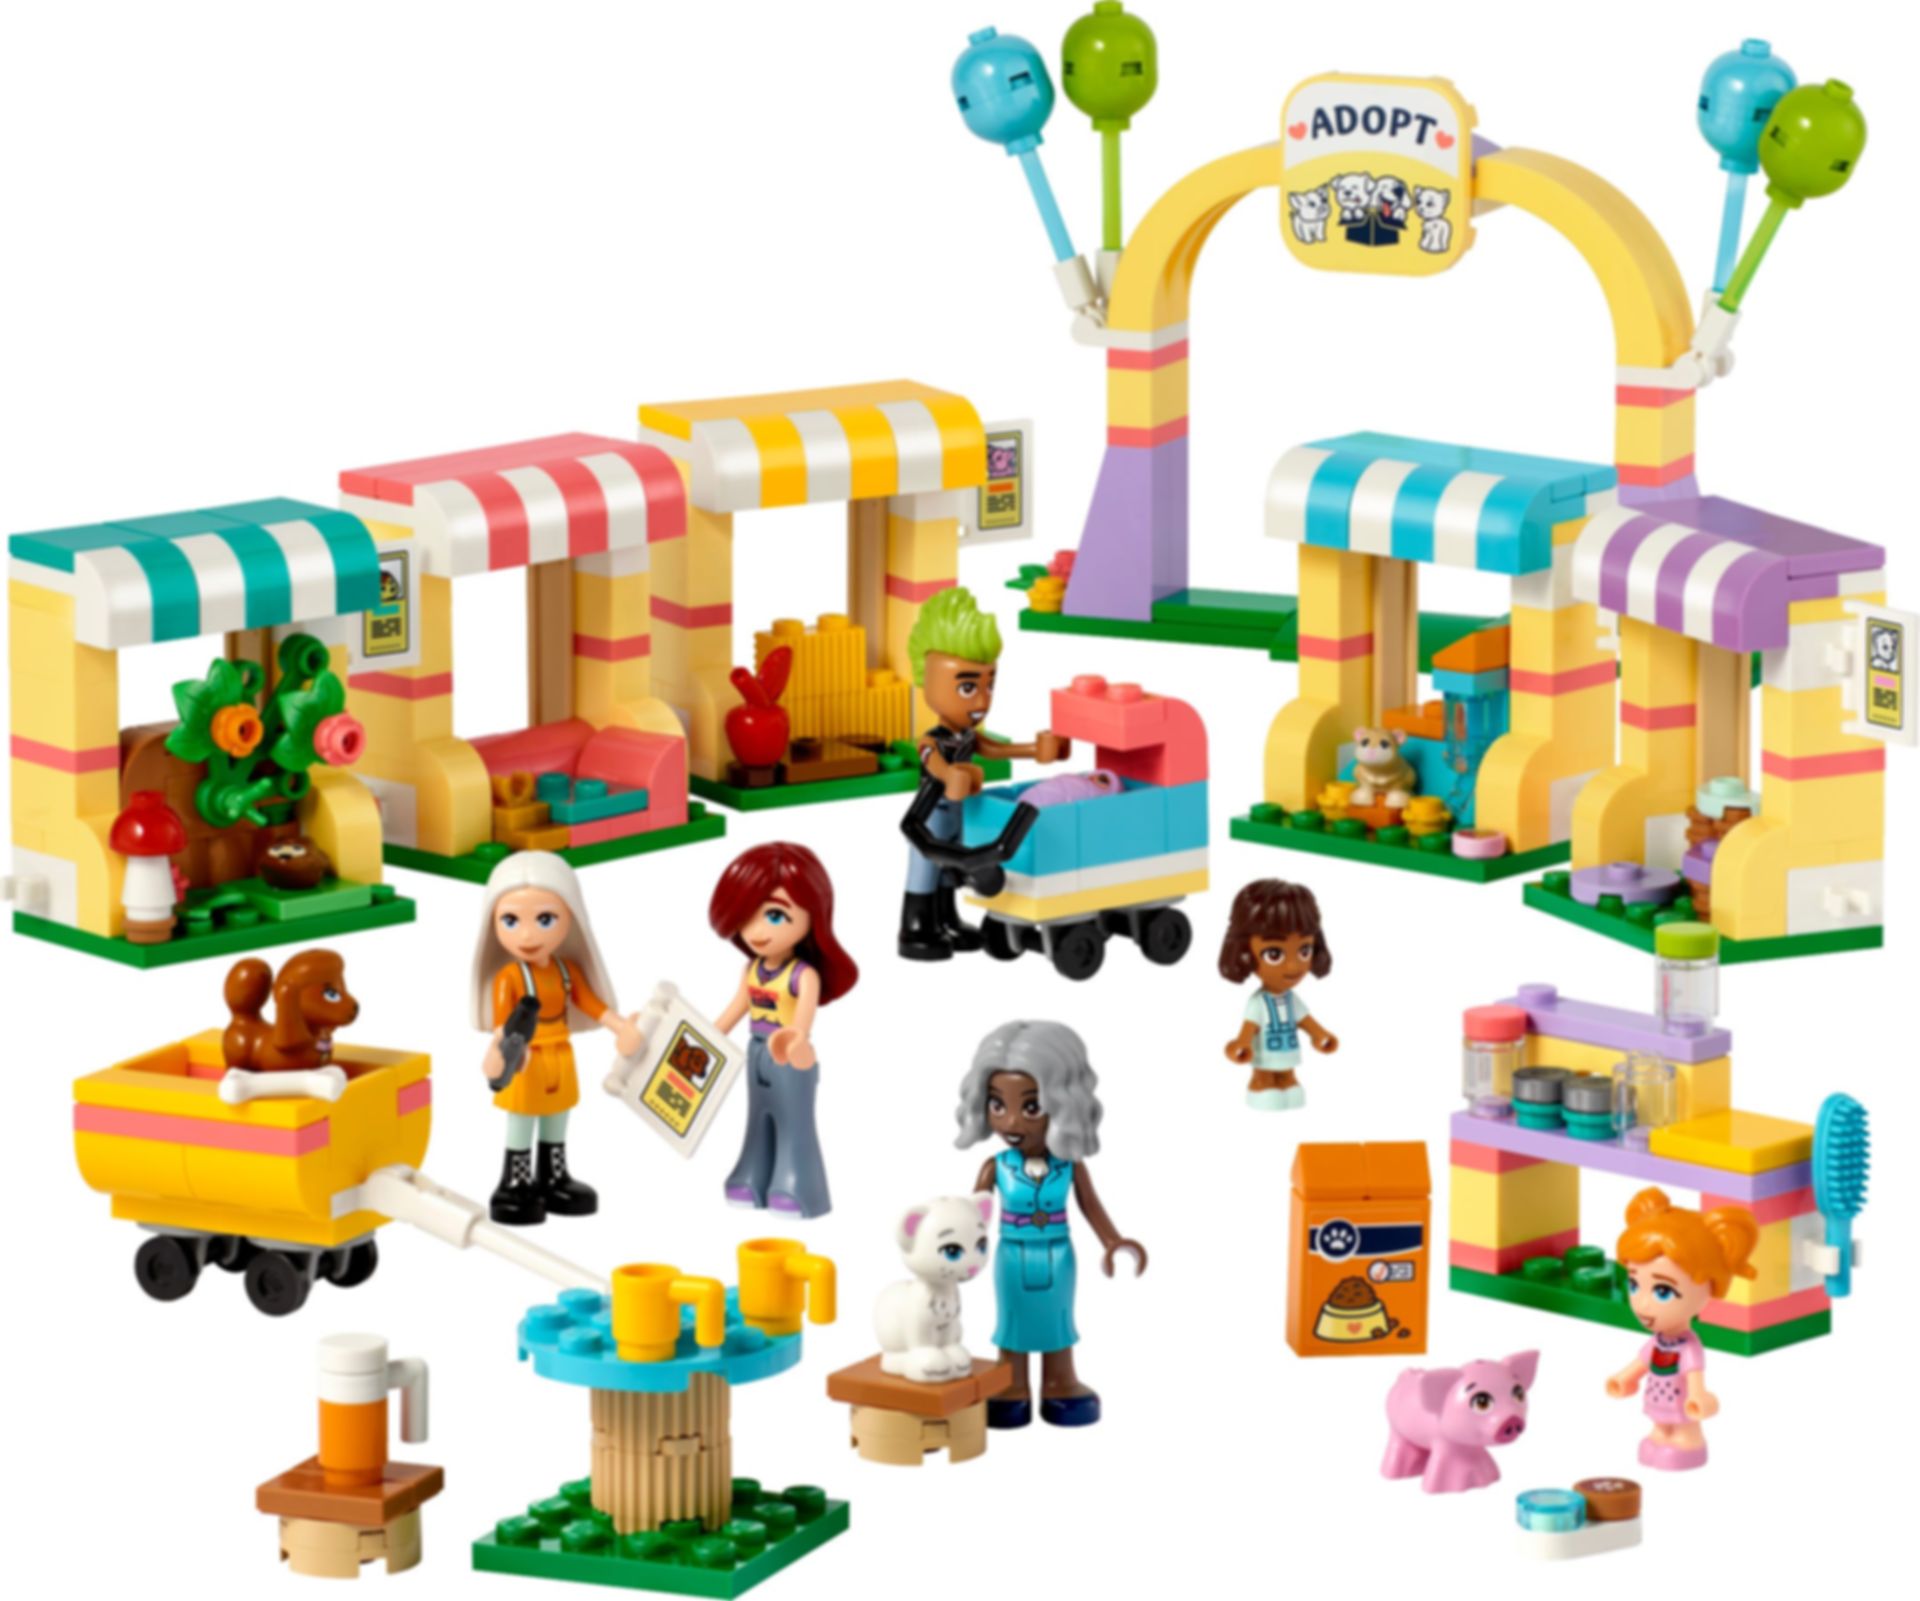 LEGO® Friends Día de Adopción de Mascotas partes